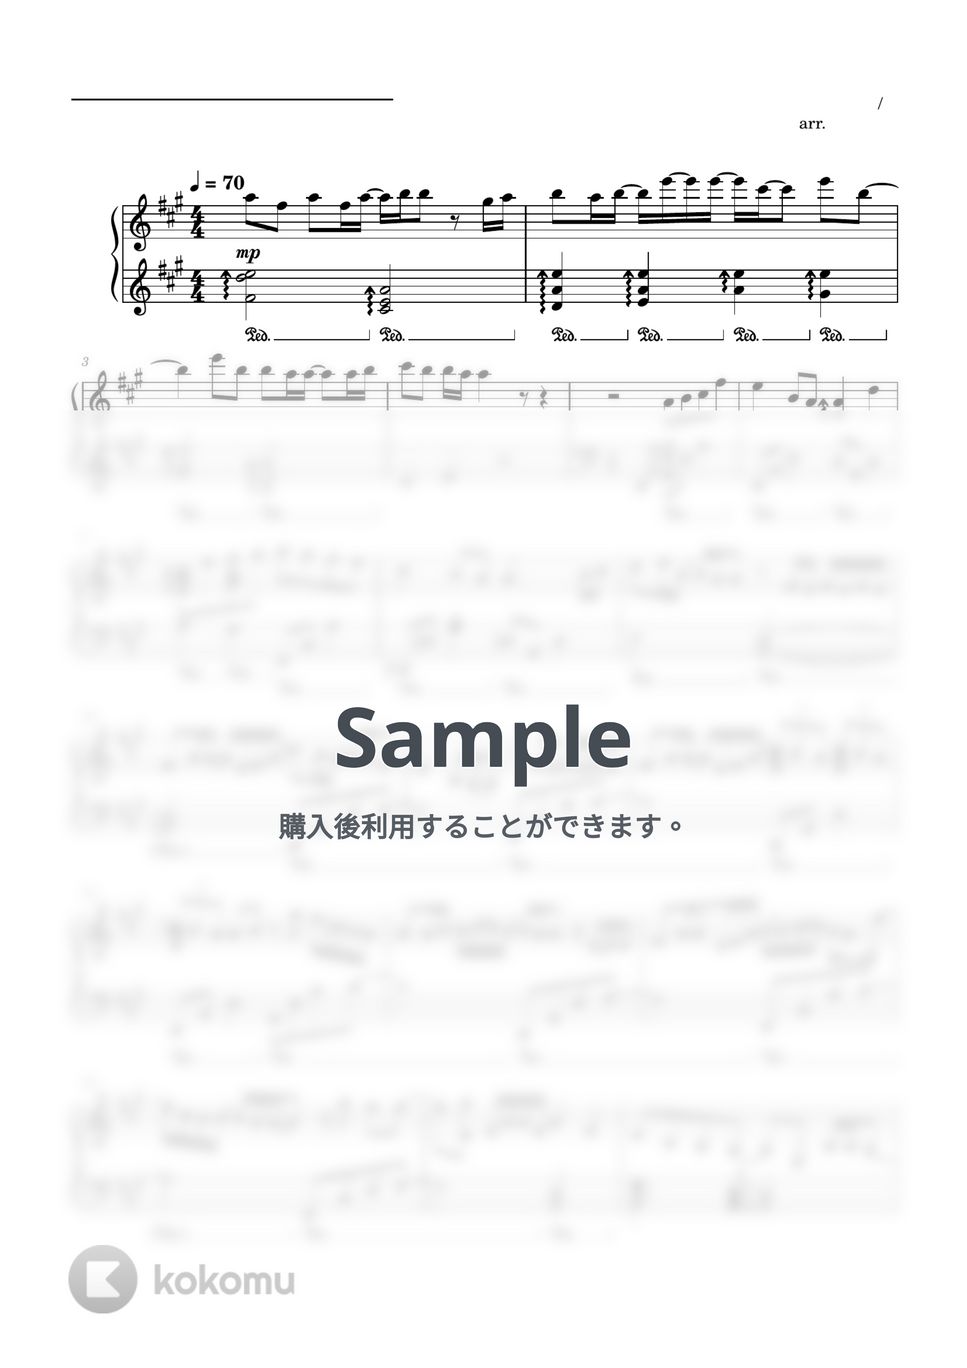 すとぷり - マブシガリヤ (ピアノソロ譜 / ピアノアレンジ) by 萌や氏